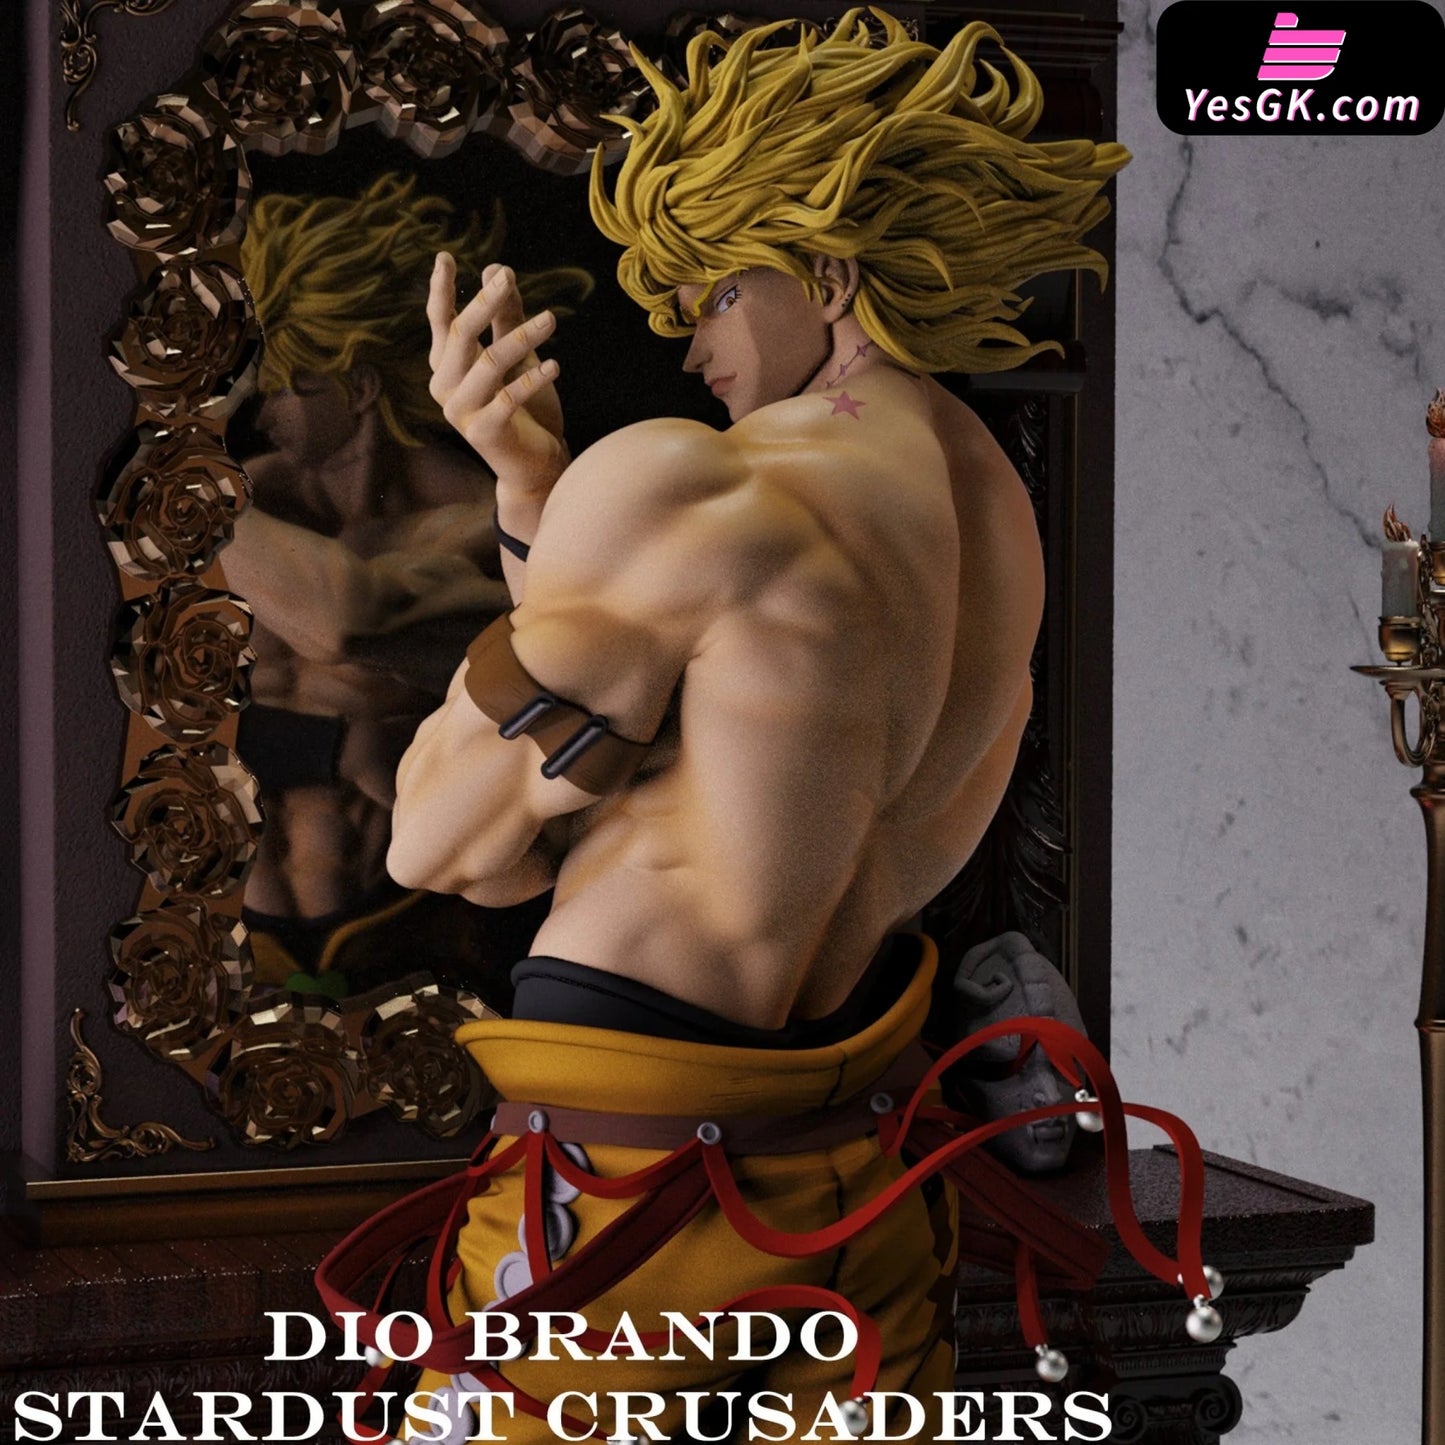 Jojos Bizarre Adventure Dio Brando Statue - Arakiart Studio [Pre-Order]